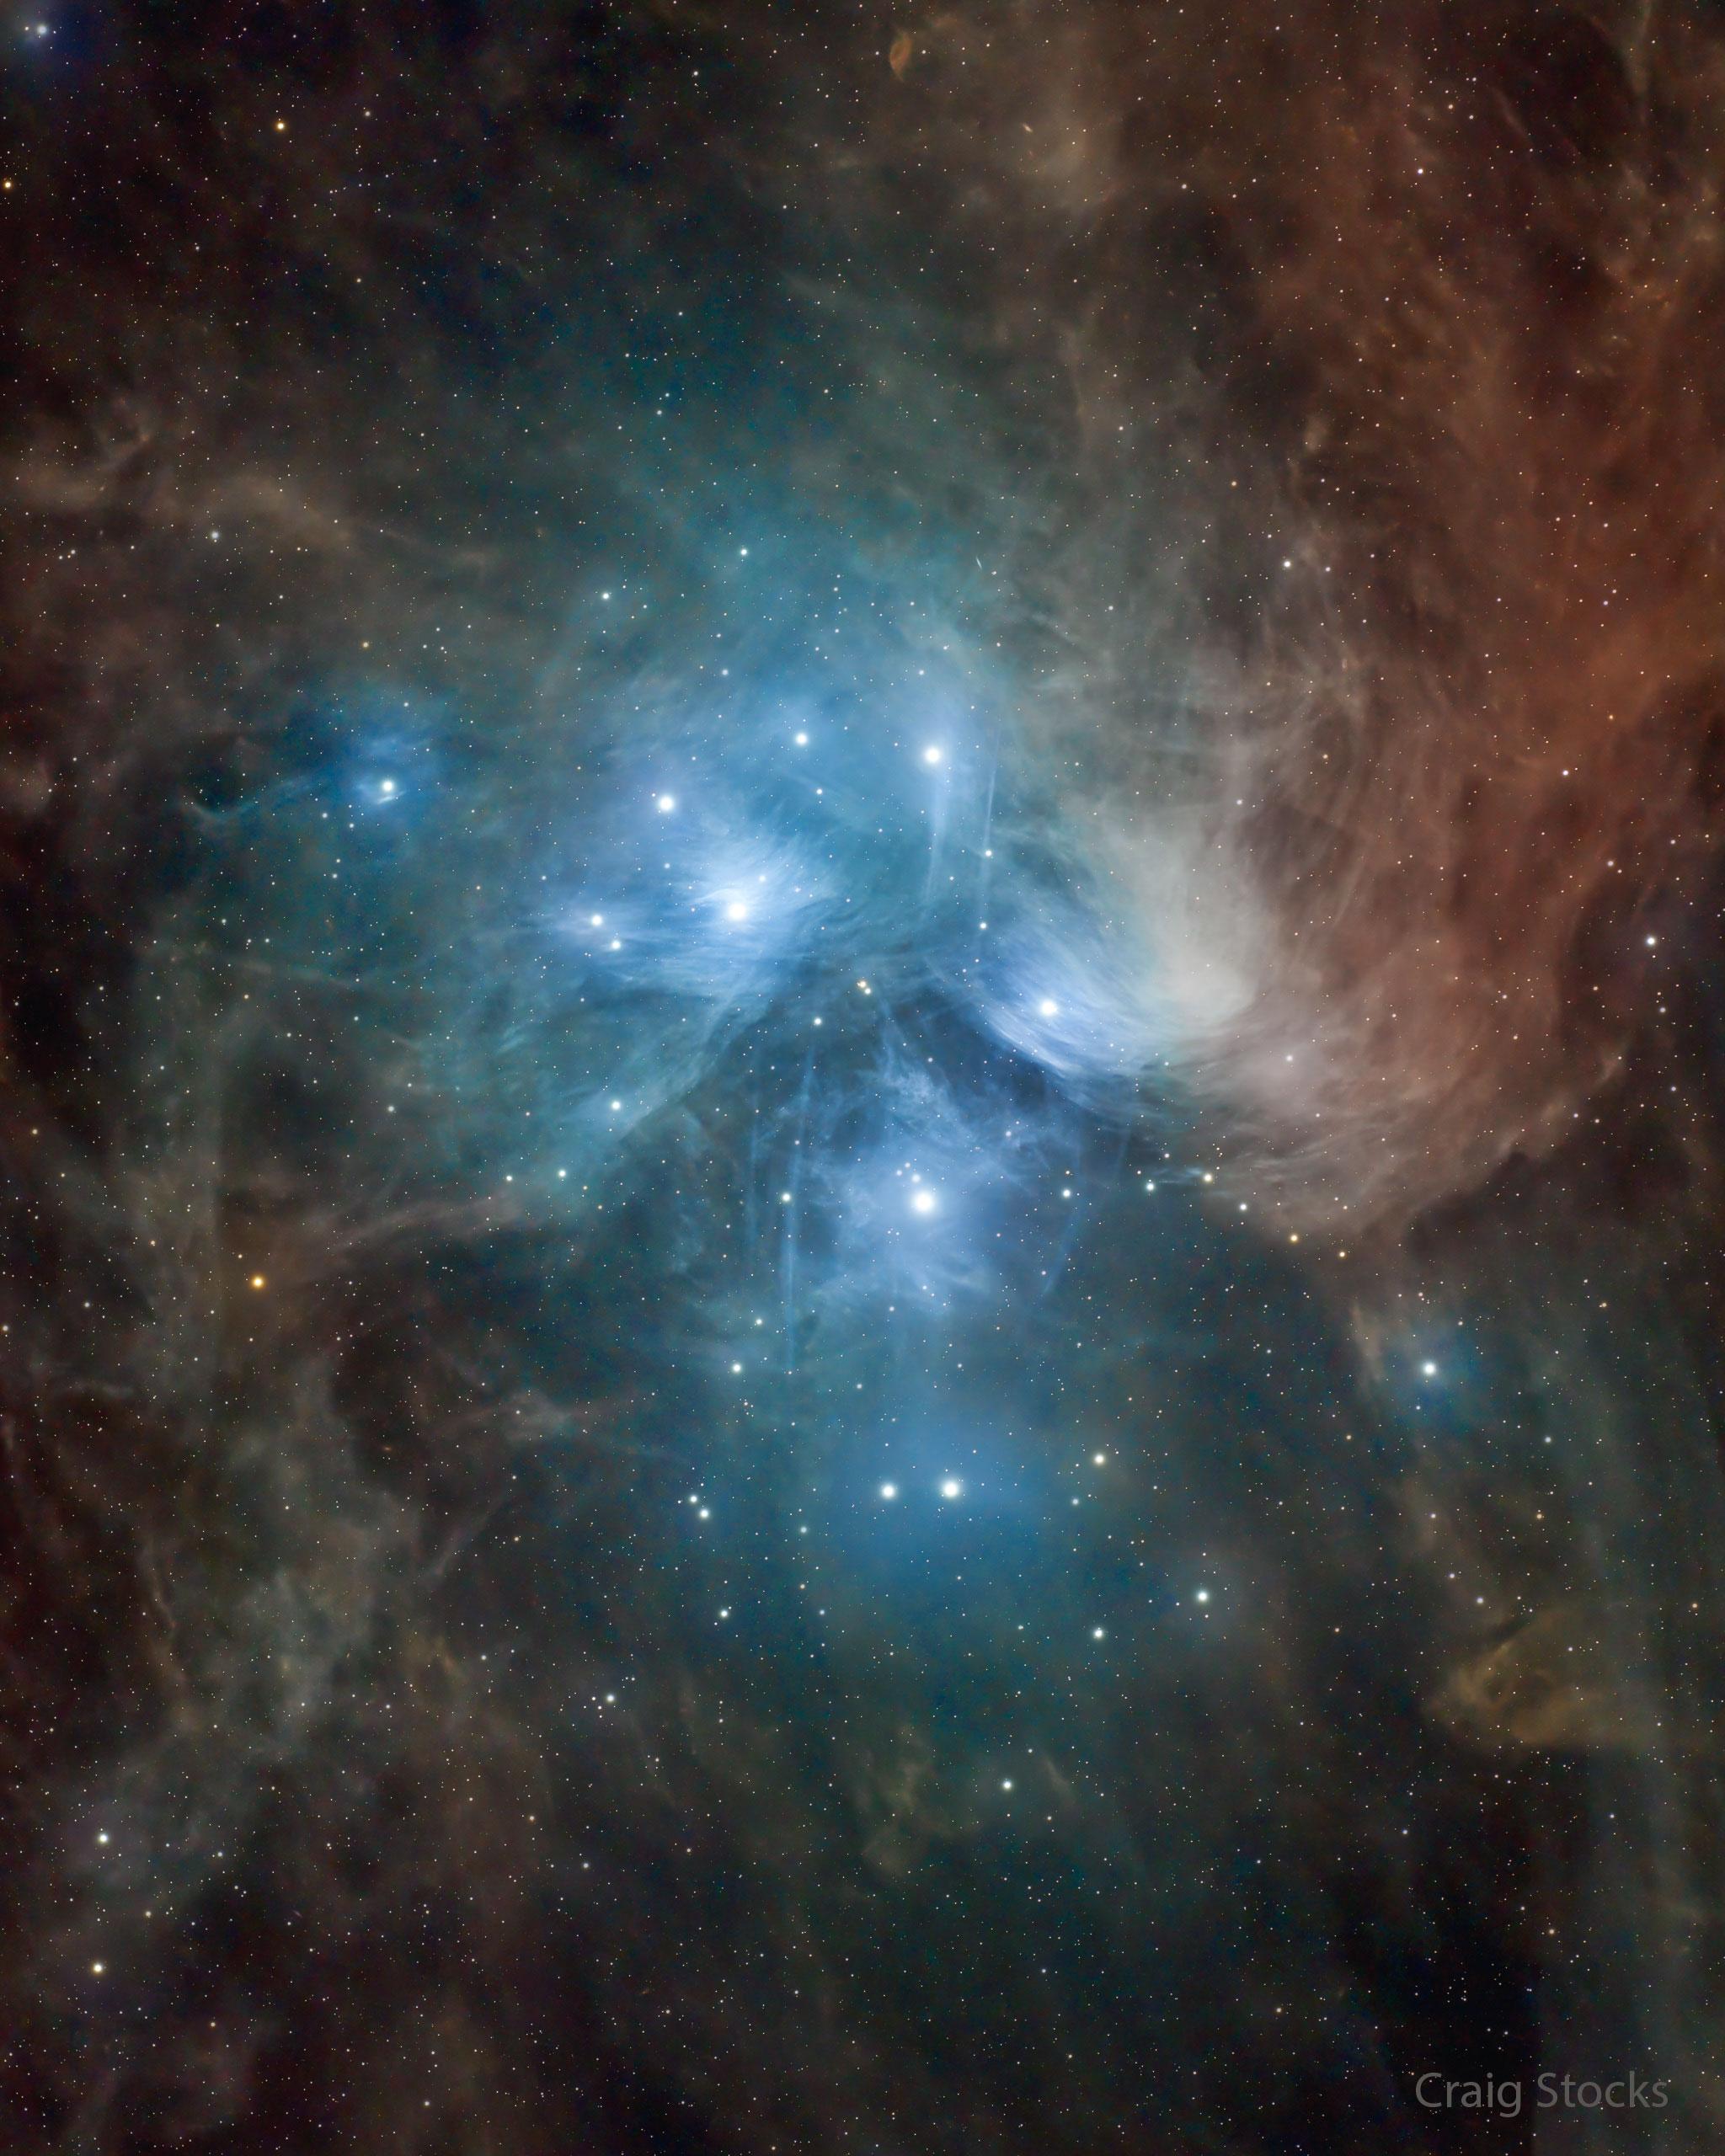 يظهر عنقود نجوم الثُّريّا محاطاً بالغبار. يعكس الغبار قرب النجوم الساطعة الضوءَ الأزرق، لكن الغبار الأبعد يبدو أحمر أكثر.